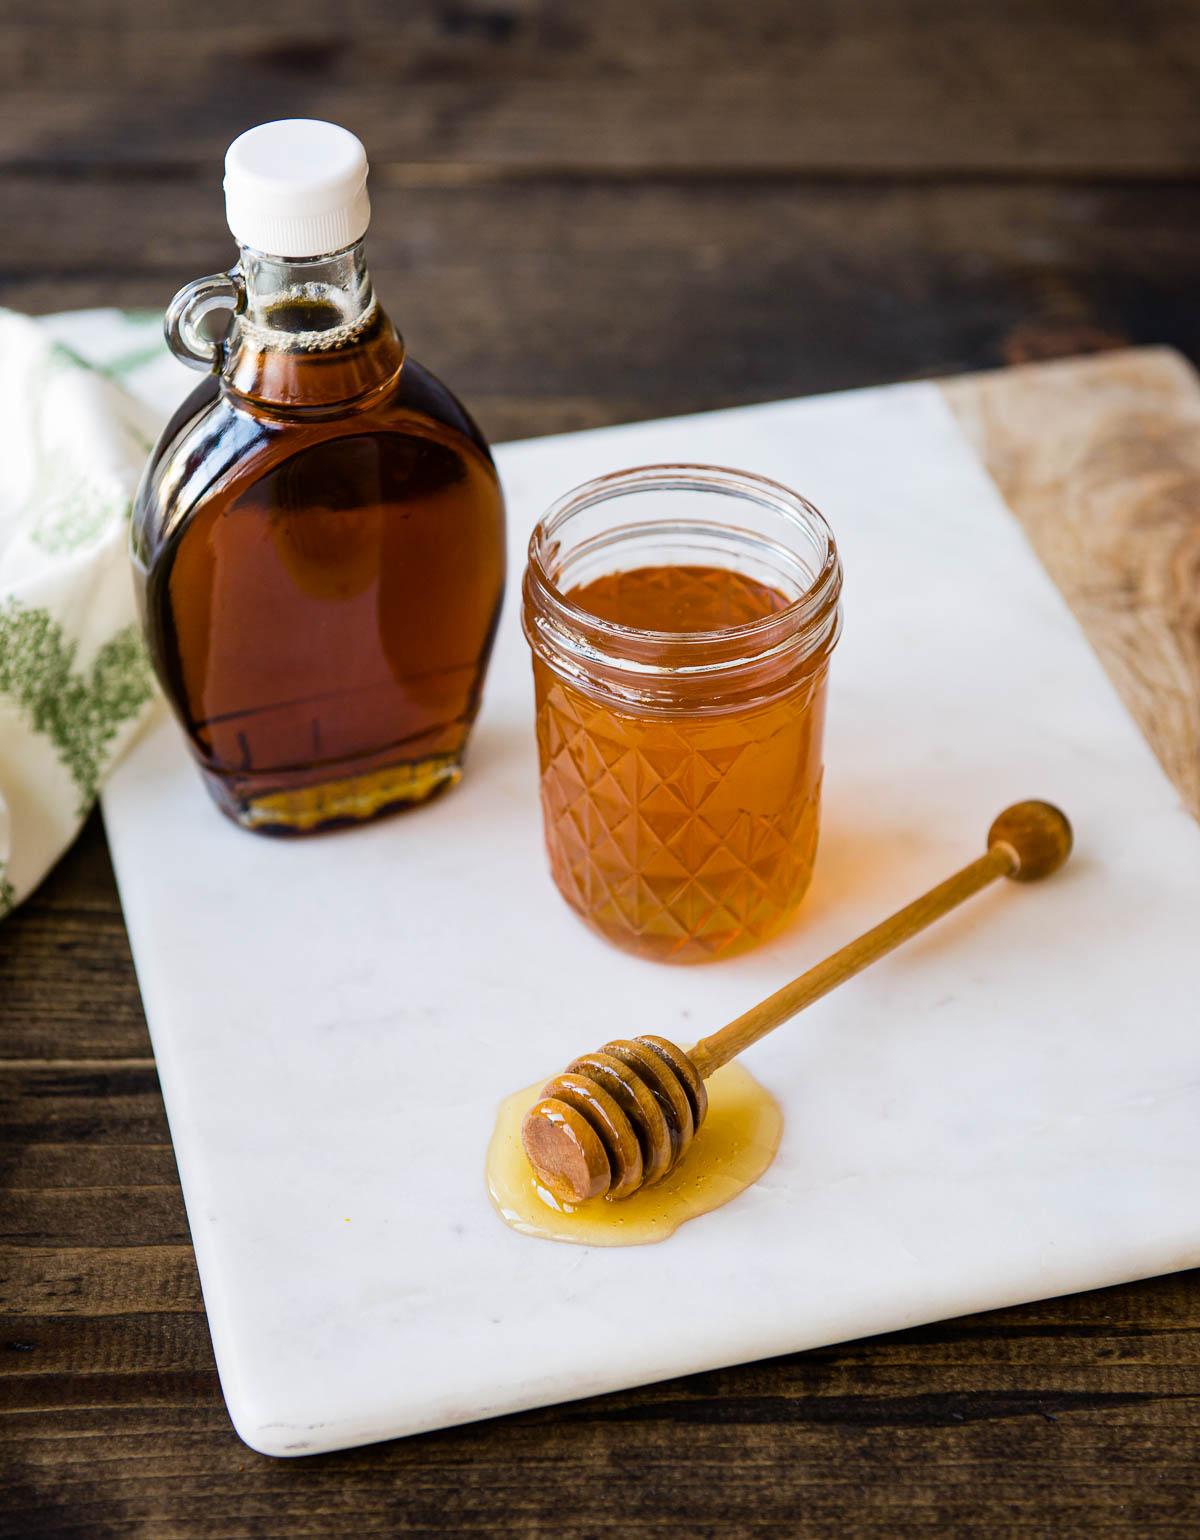 sciroppo d'acero e miele in barattoli di vetro e un cucchiaio di miele di legno su un tagliere di marmo bianco.